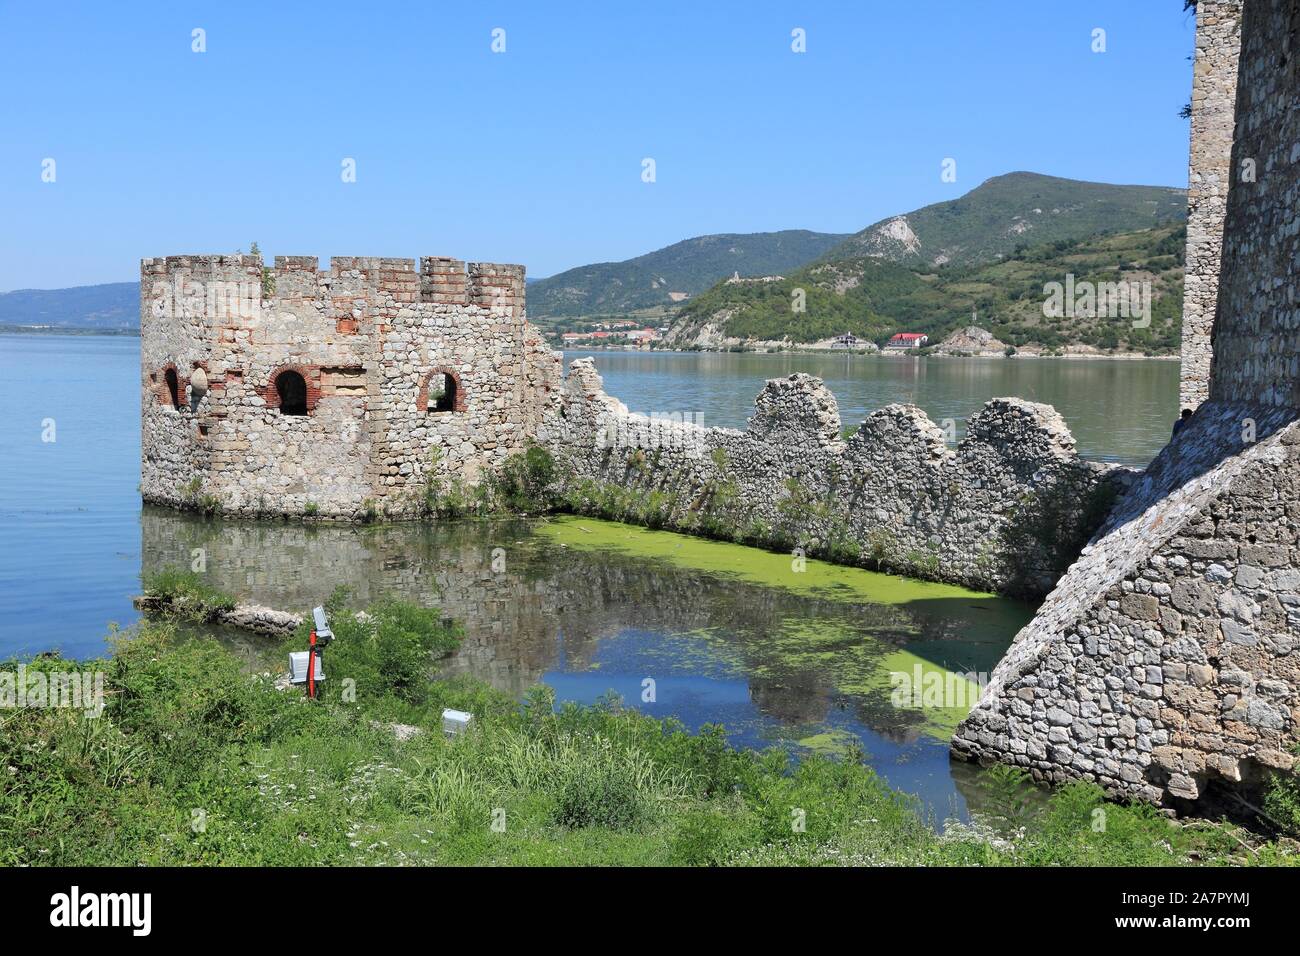 Serbia landmark. Golubac Fortress on Danube River in region of Branicevo. Stock Photo